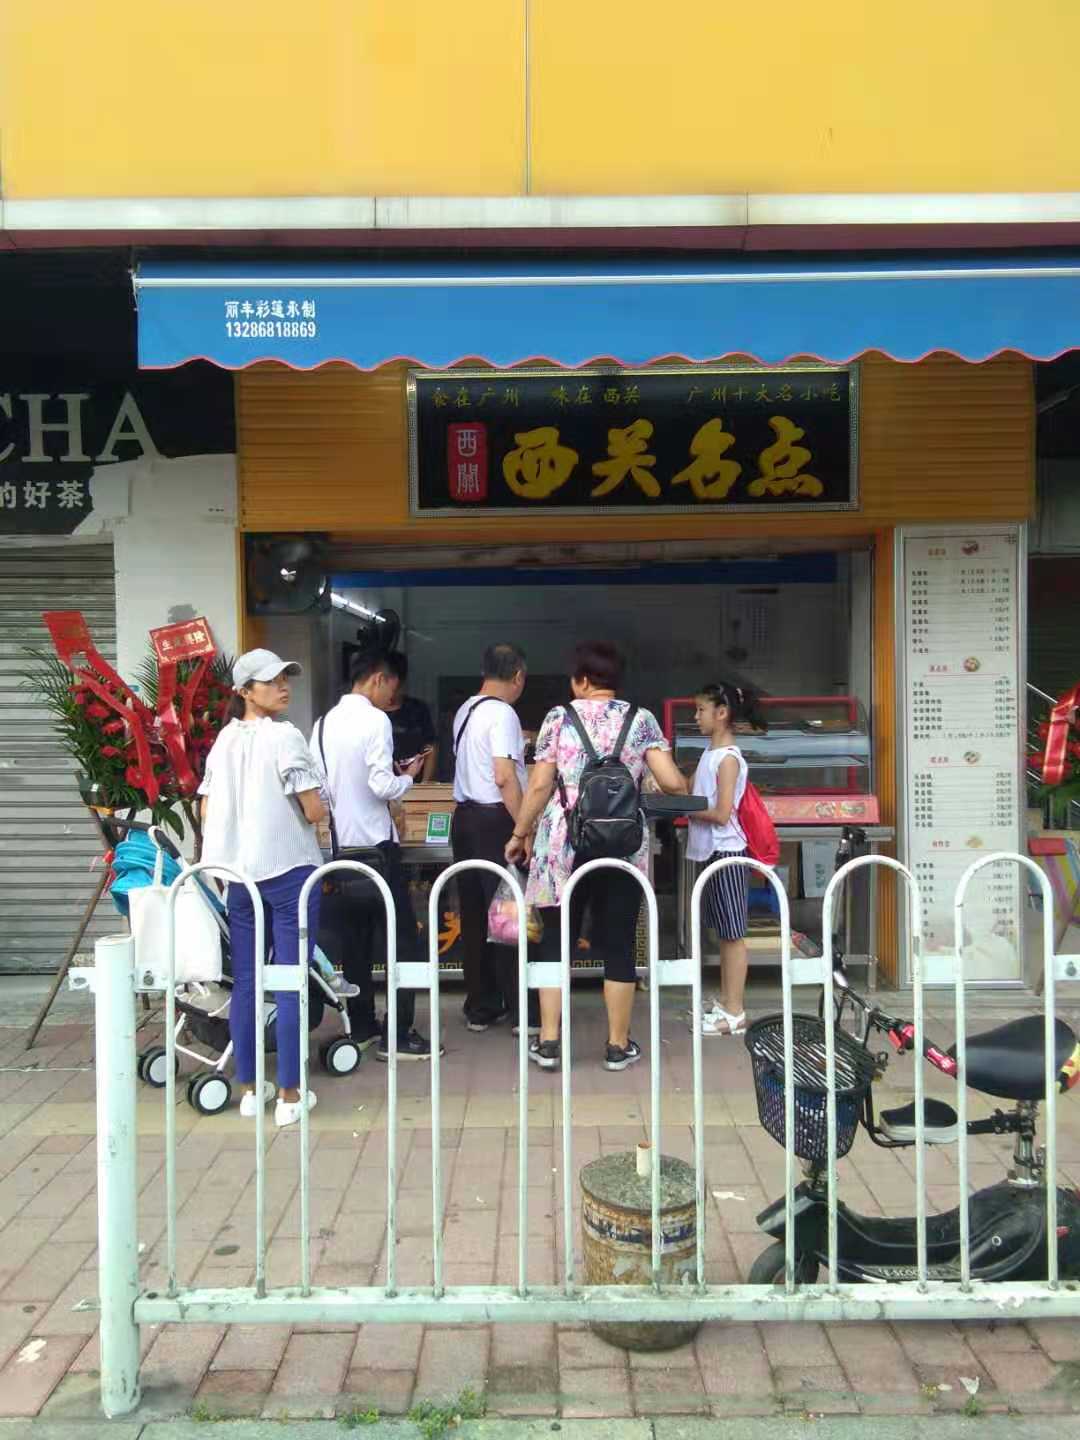 祝贺广州海珠区昌岗中路的西关名点店成功开业